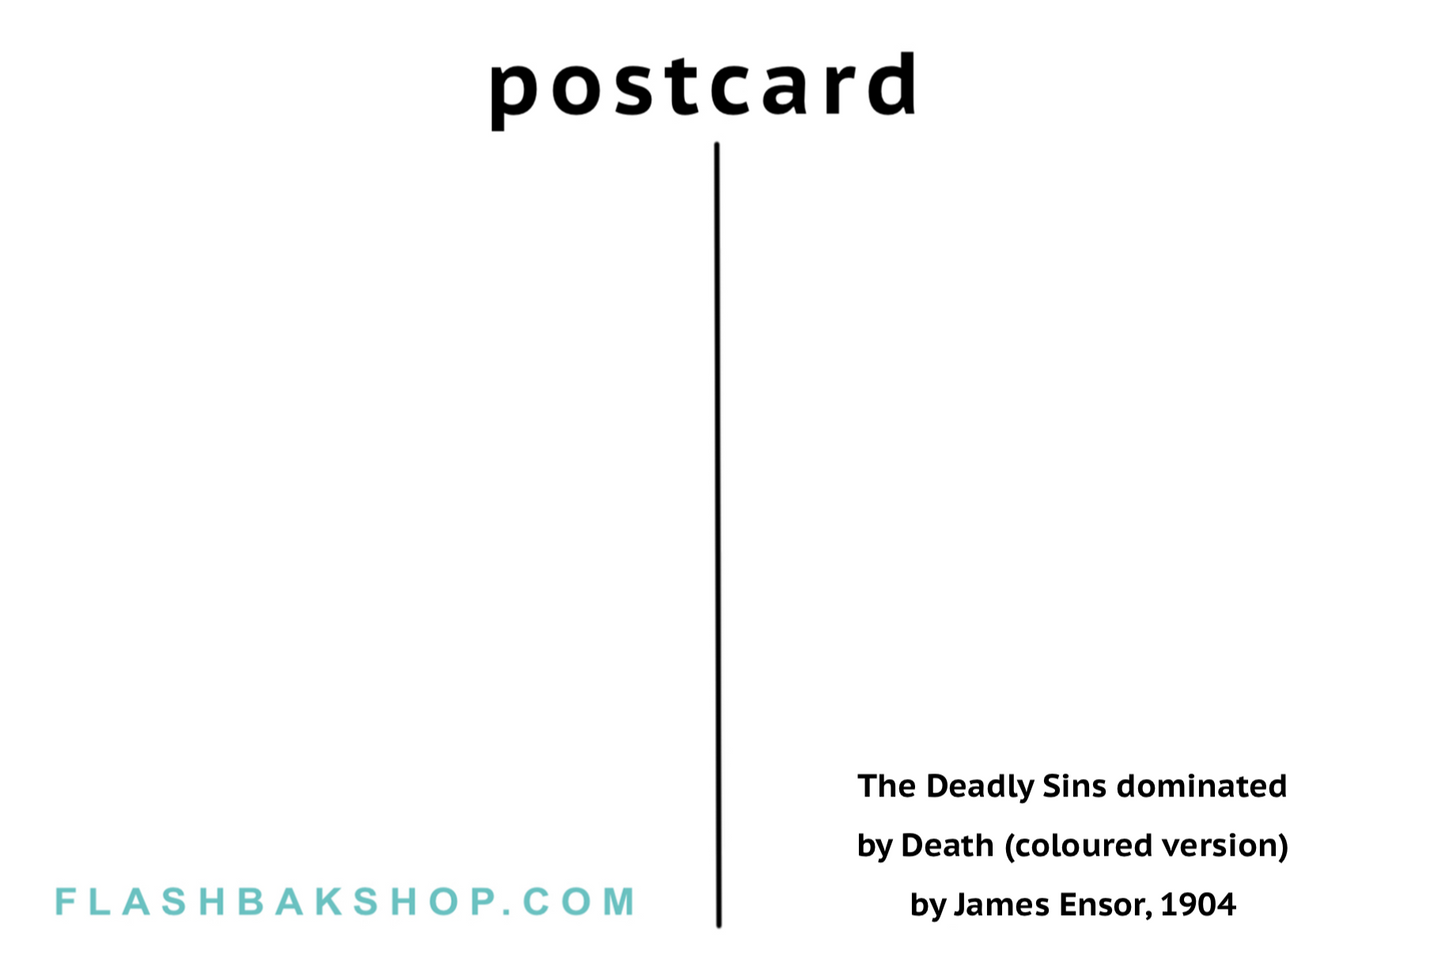 Les Péchés Capitaux dominés par la Mort (version colorée) de James Ensor, 1904 - Carte postale